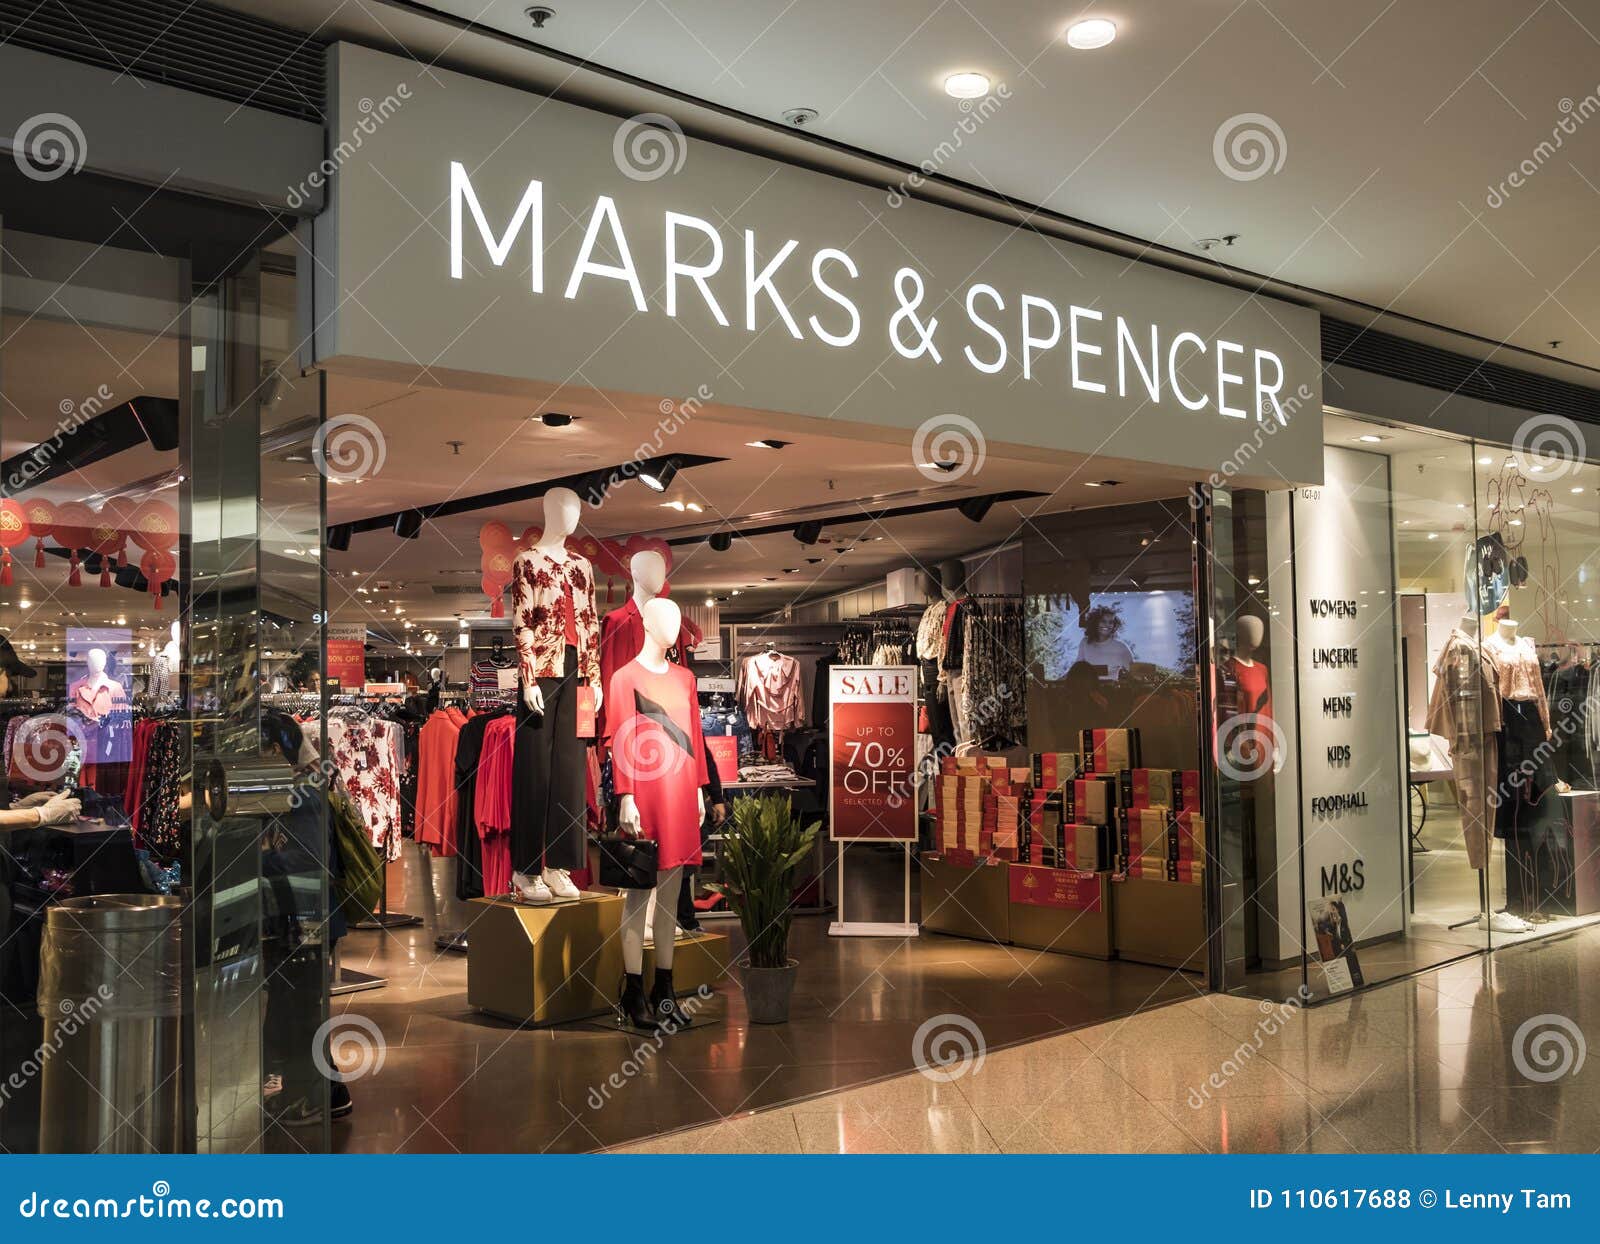 Tienda De M&S Hong Kong. Marks and Spencer Se En La Venta De Ropa Y Comida De Lujo Foto de archivo editorial - Imagen de editorial, lifestyle: 110617688